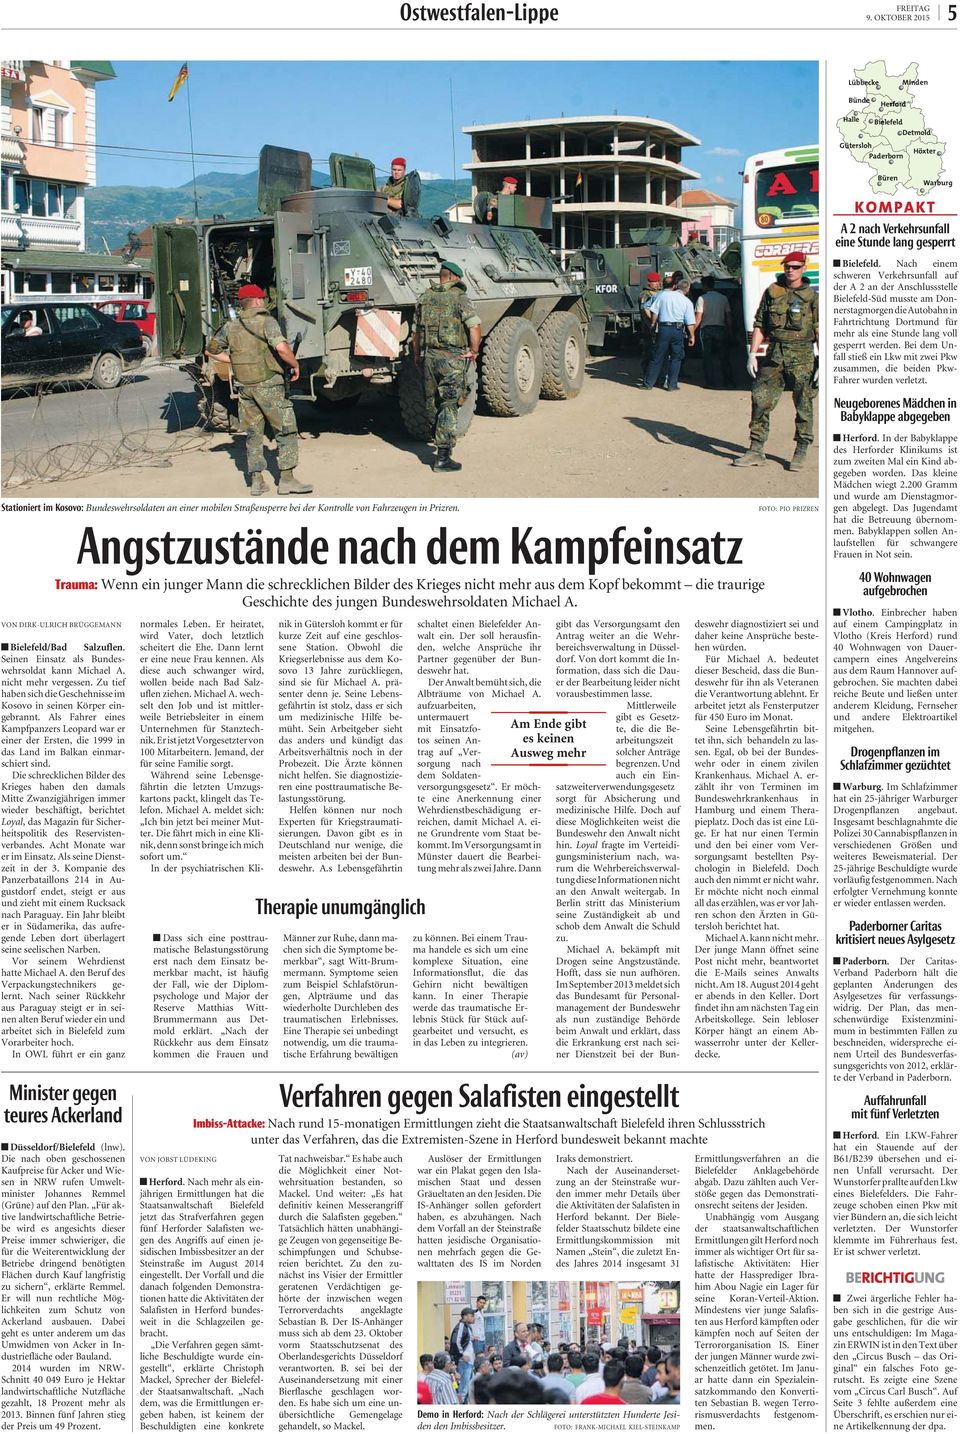 werden. Bei dem Unfall stieß ein Lkw mit zwei Pkw zusammen, die beiden Pkw- Fahrer wurden verletzt. Bundeswehrsoldaten an einer mobilen Straßensperre bei der Kontrolle von Fahrzeugen in Prizren.